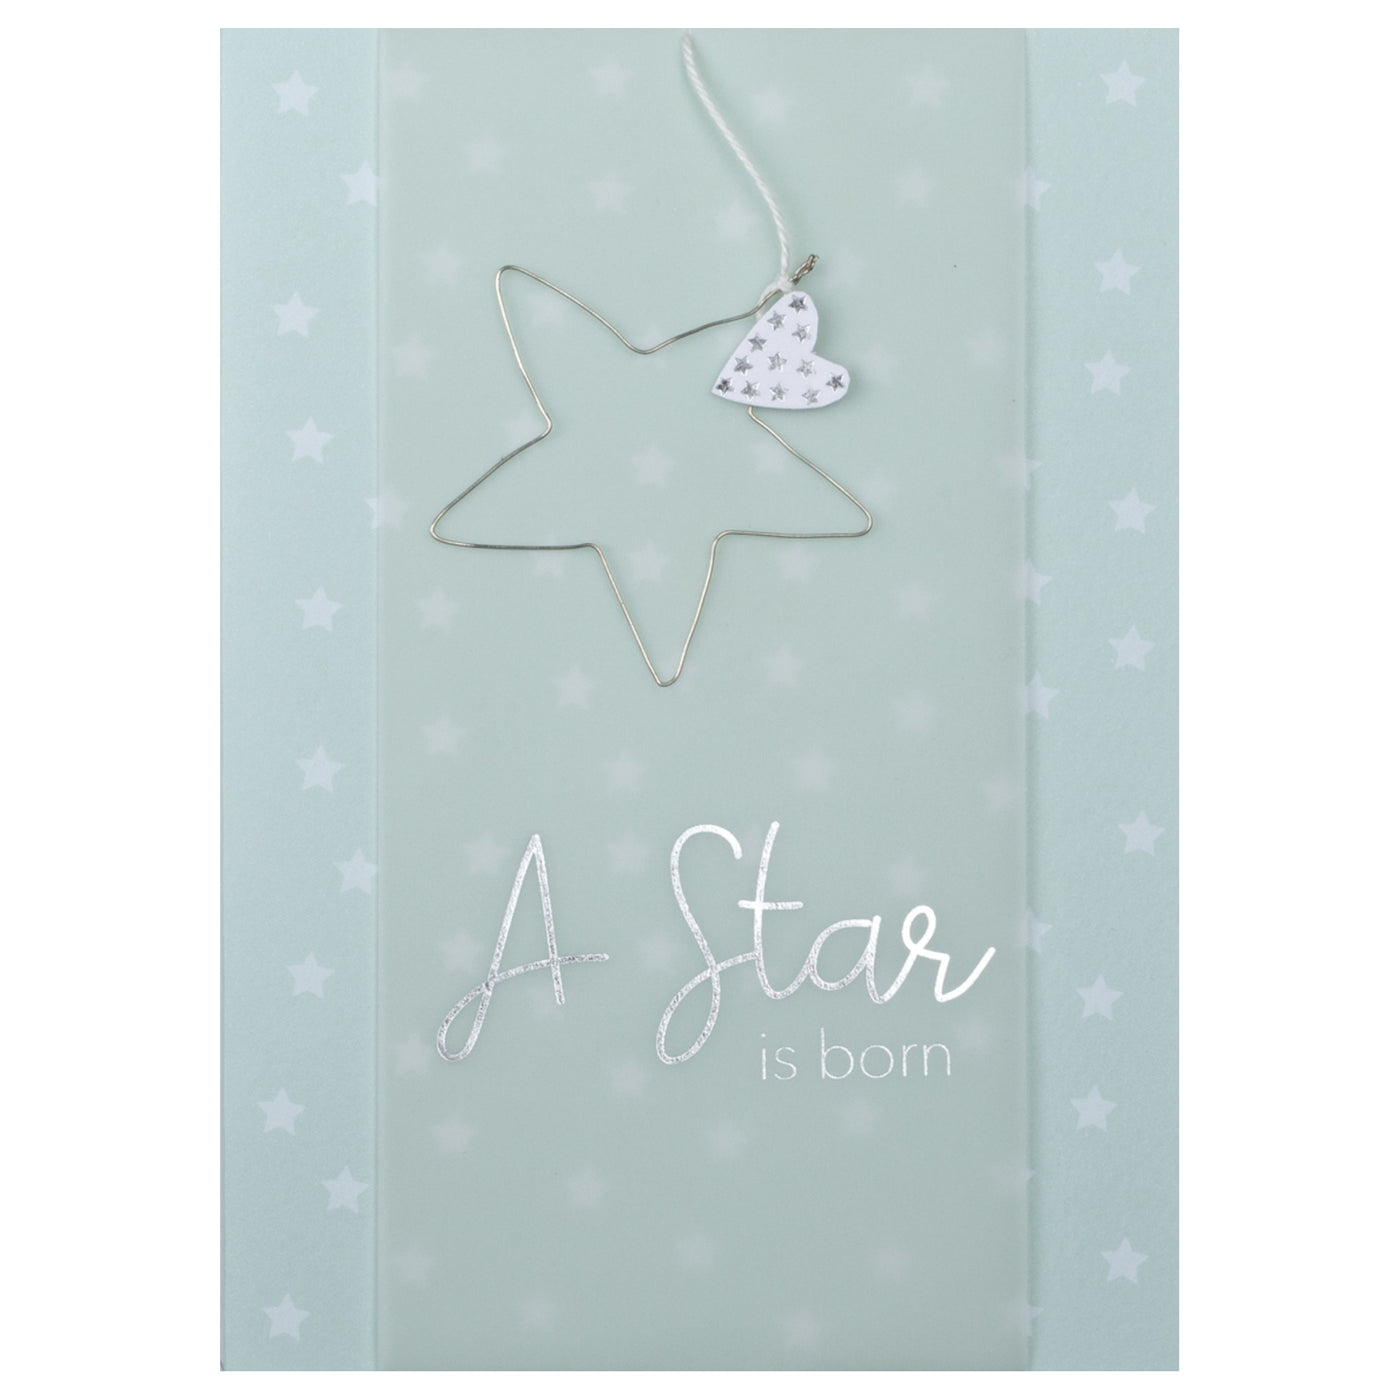 Postal "A Star is born"